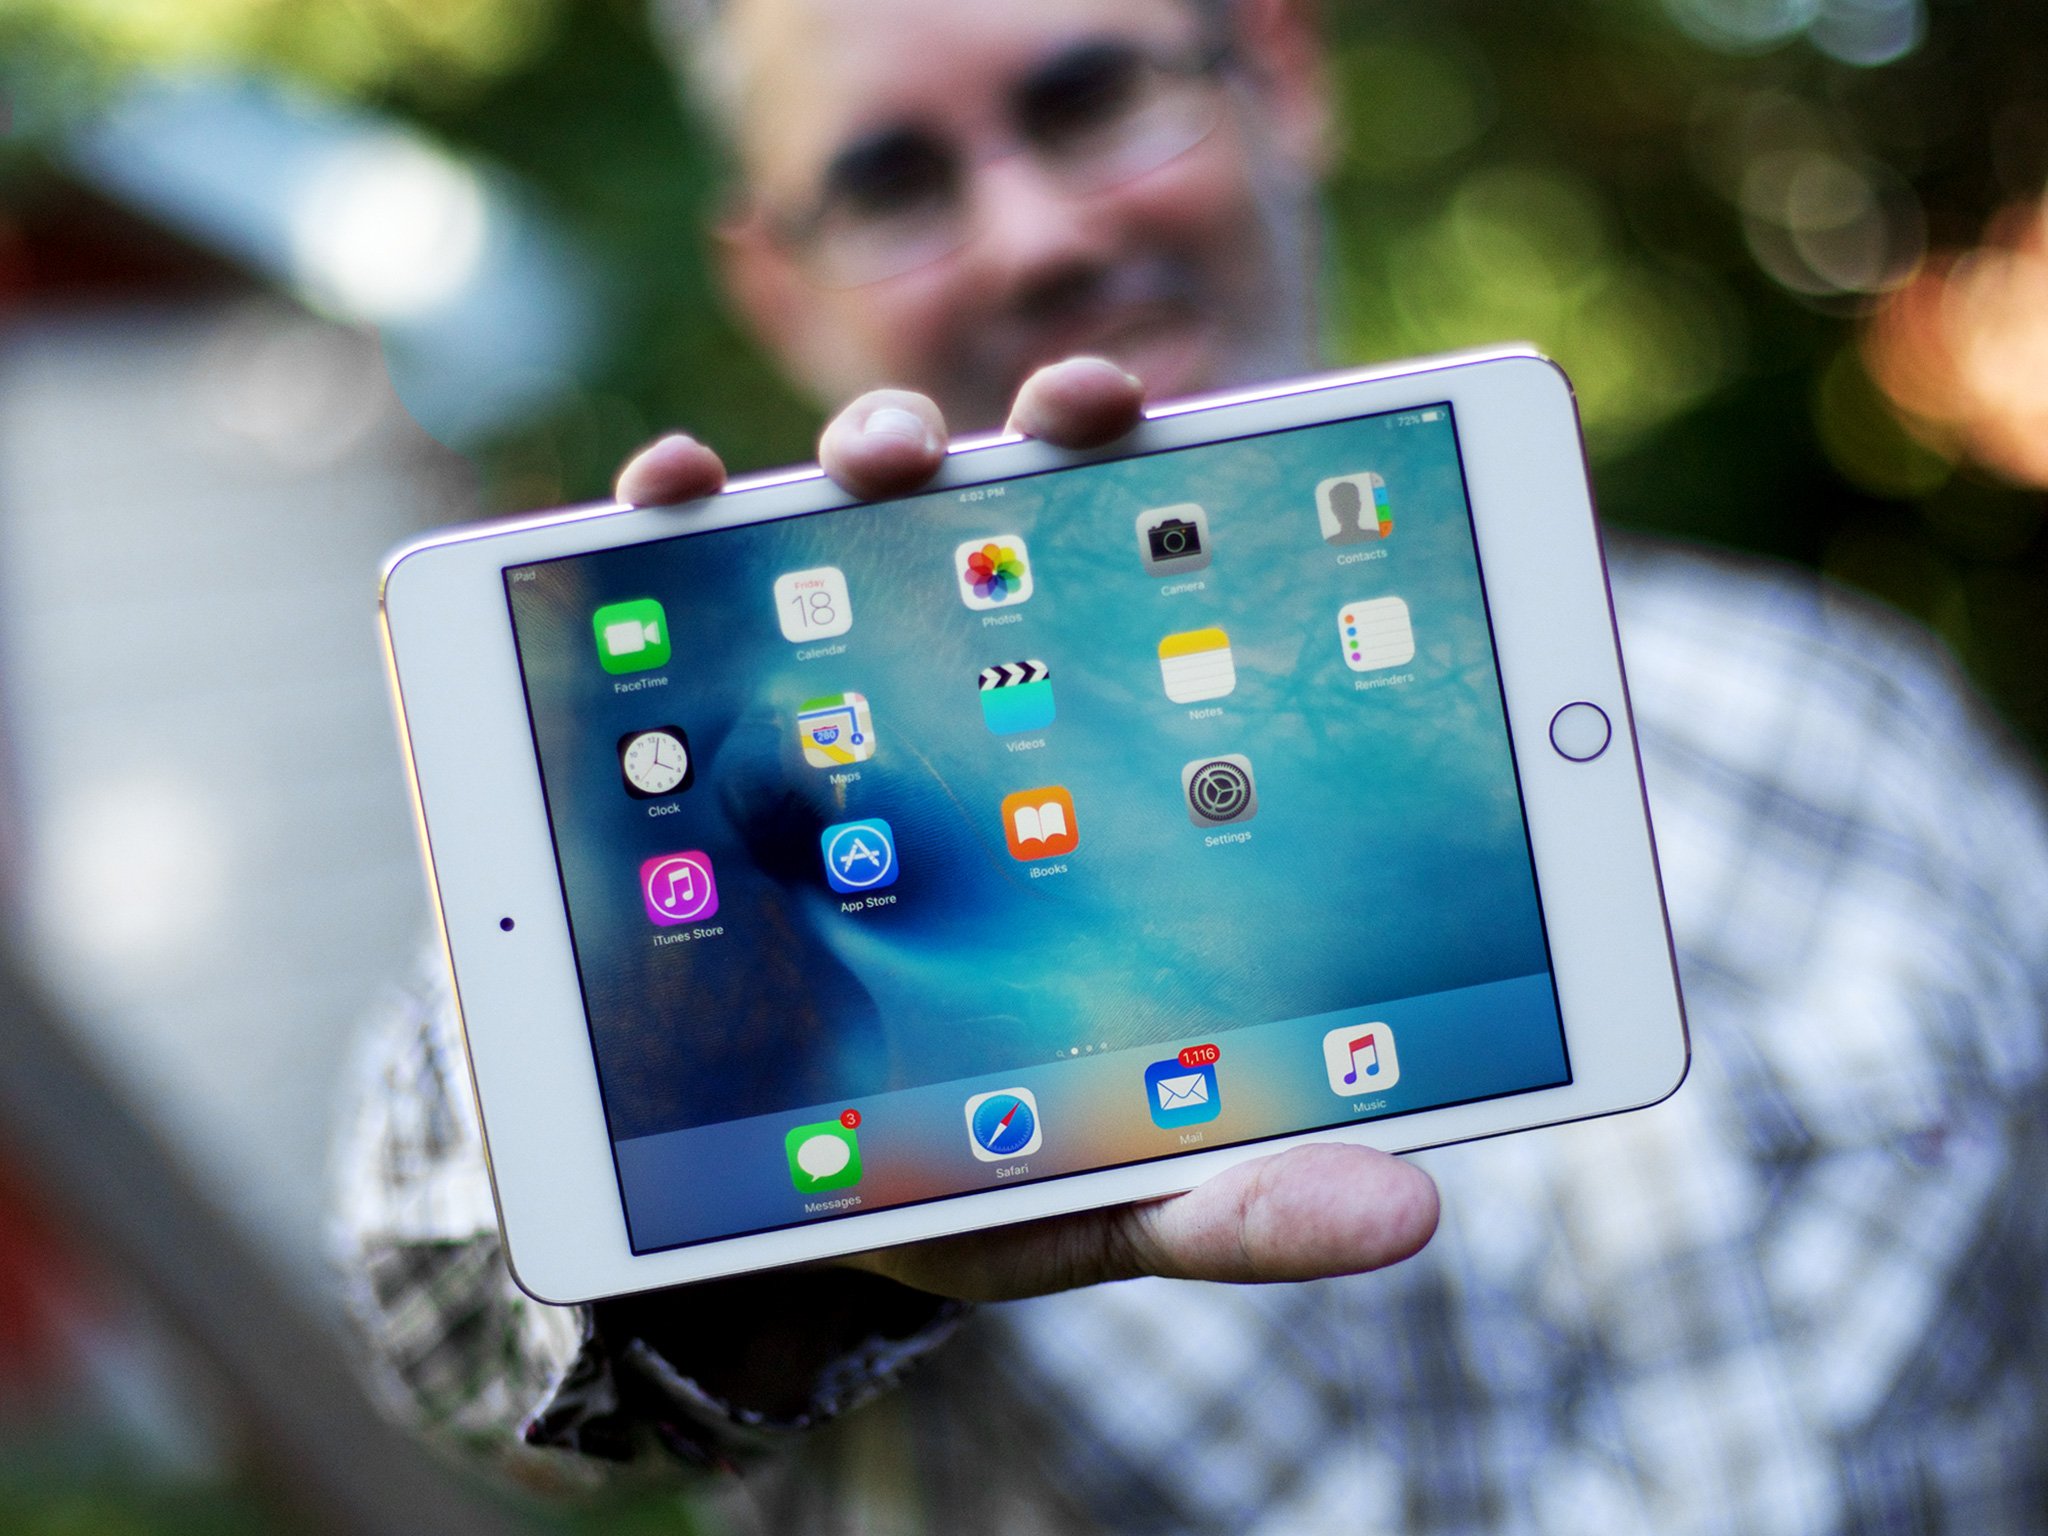 Apple iPad mini 4 Wi-Fi - 4th generation - tablet - 64 GB - 7.9" IPS ...